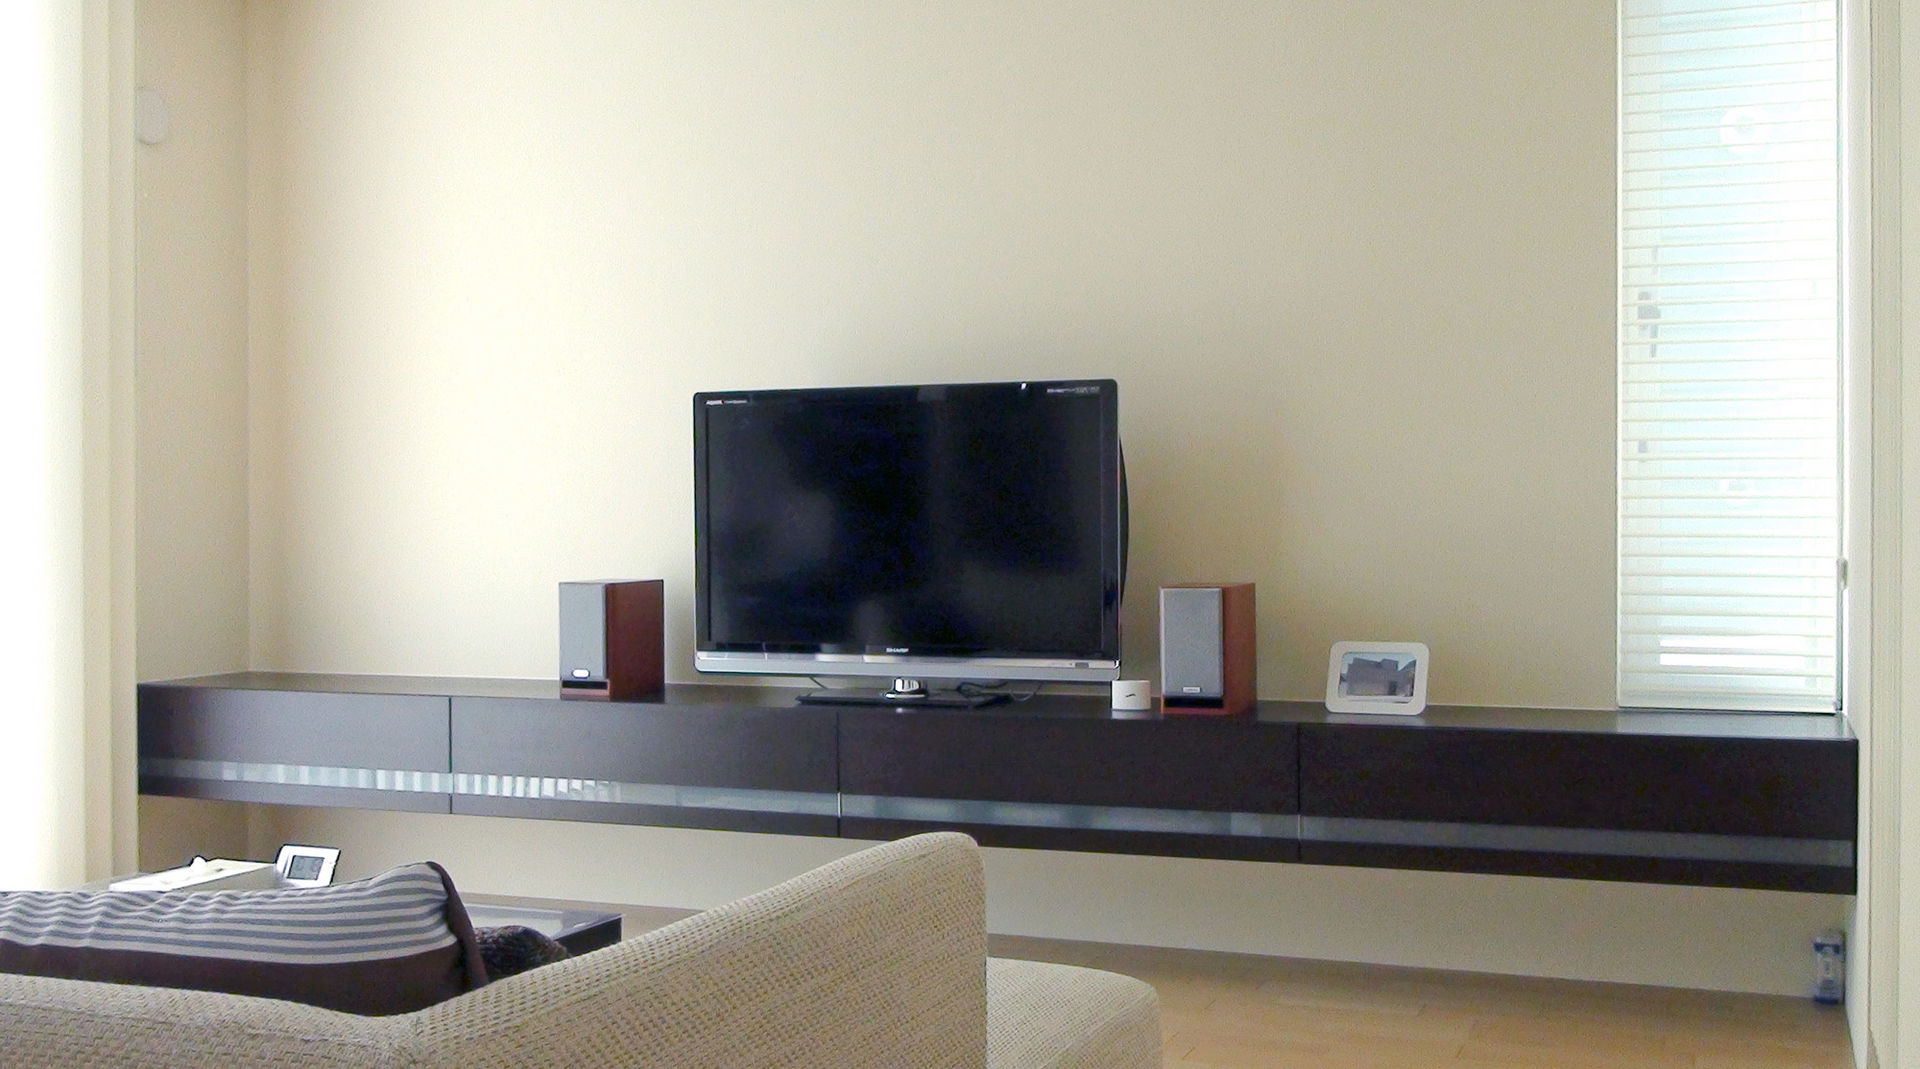 インテリアにこだわりを持つ限られた人が手に入れているフロート式TVボードとは、その実例を公開, k-design(カワジリデザイン) k-design(カワジリデザイン) Ruang Keluarga Modern TV stands & cabinets